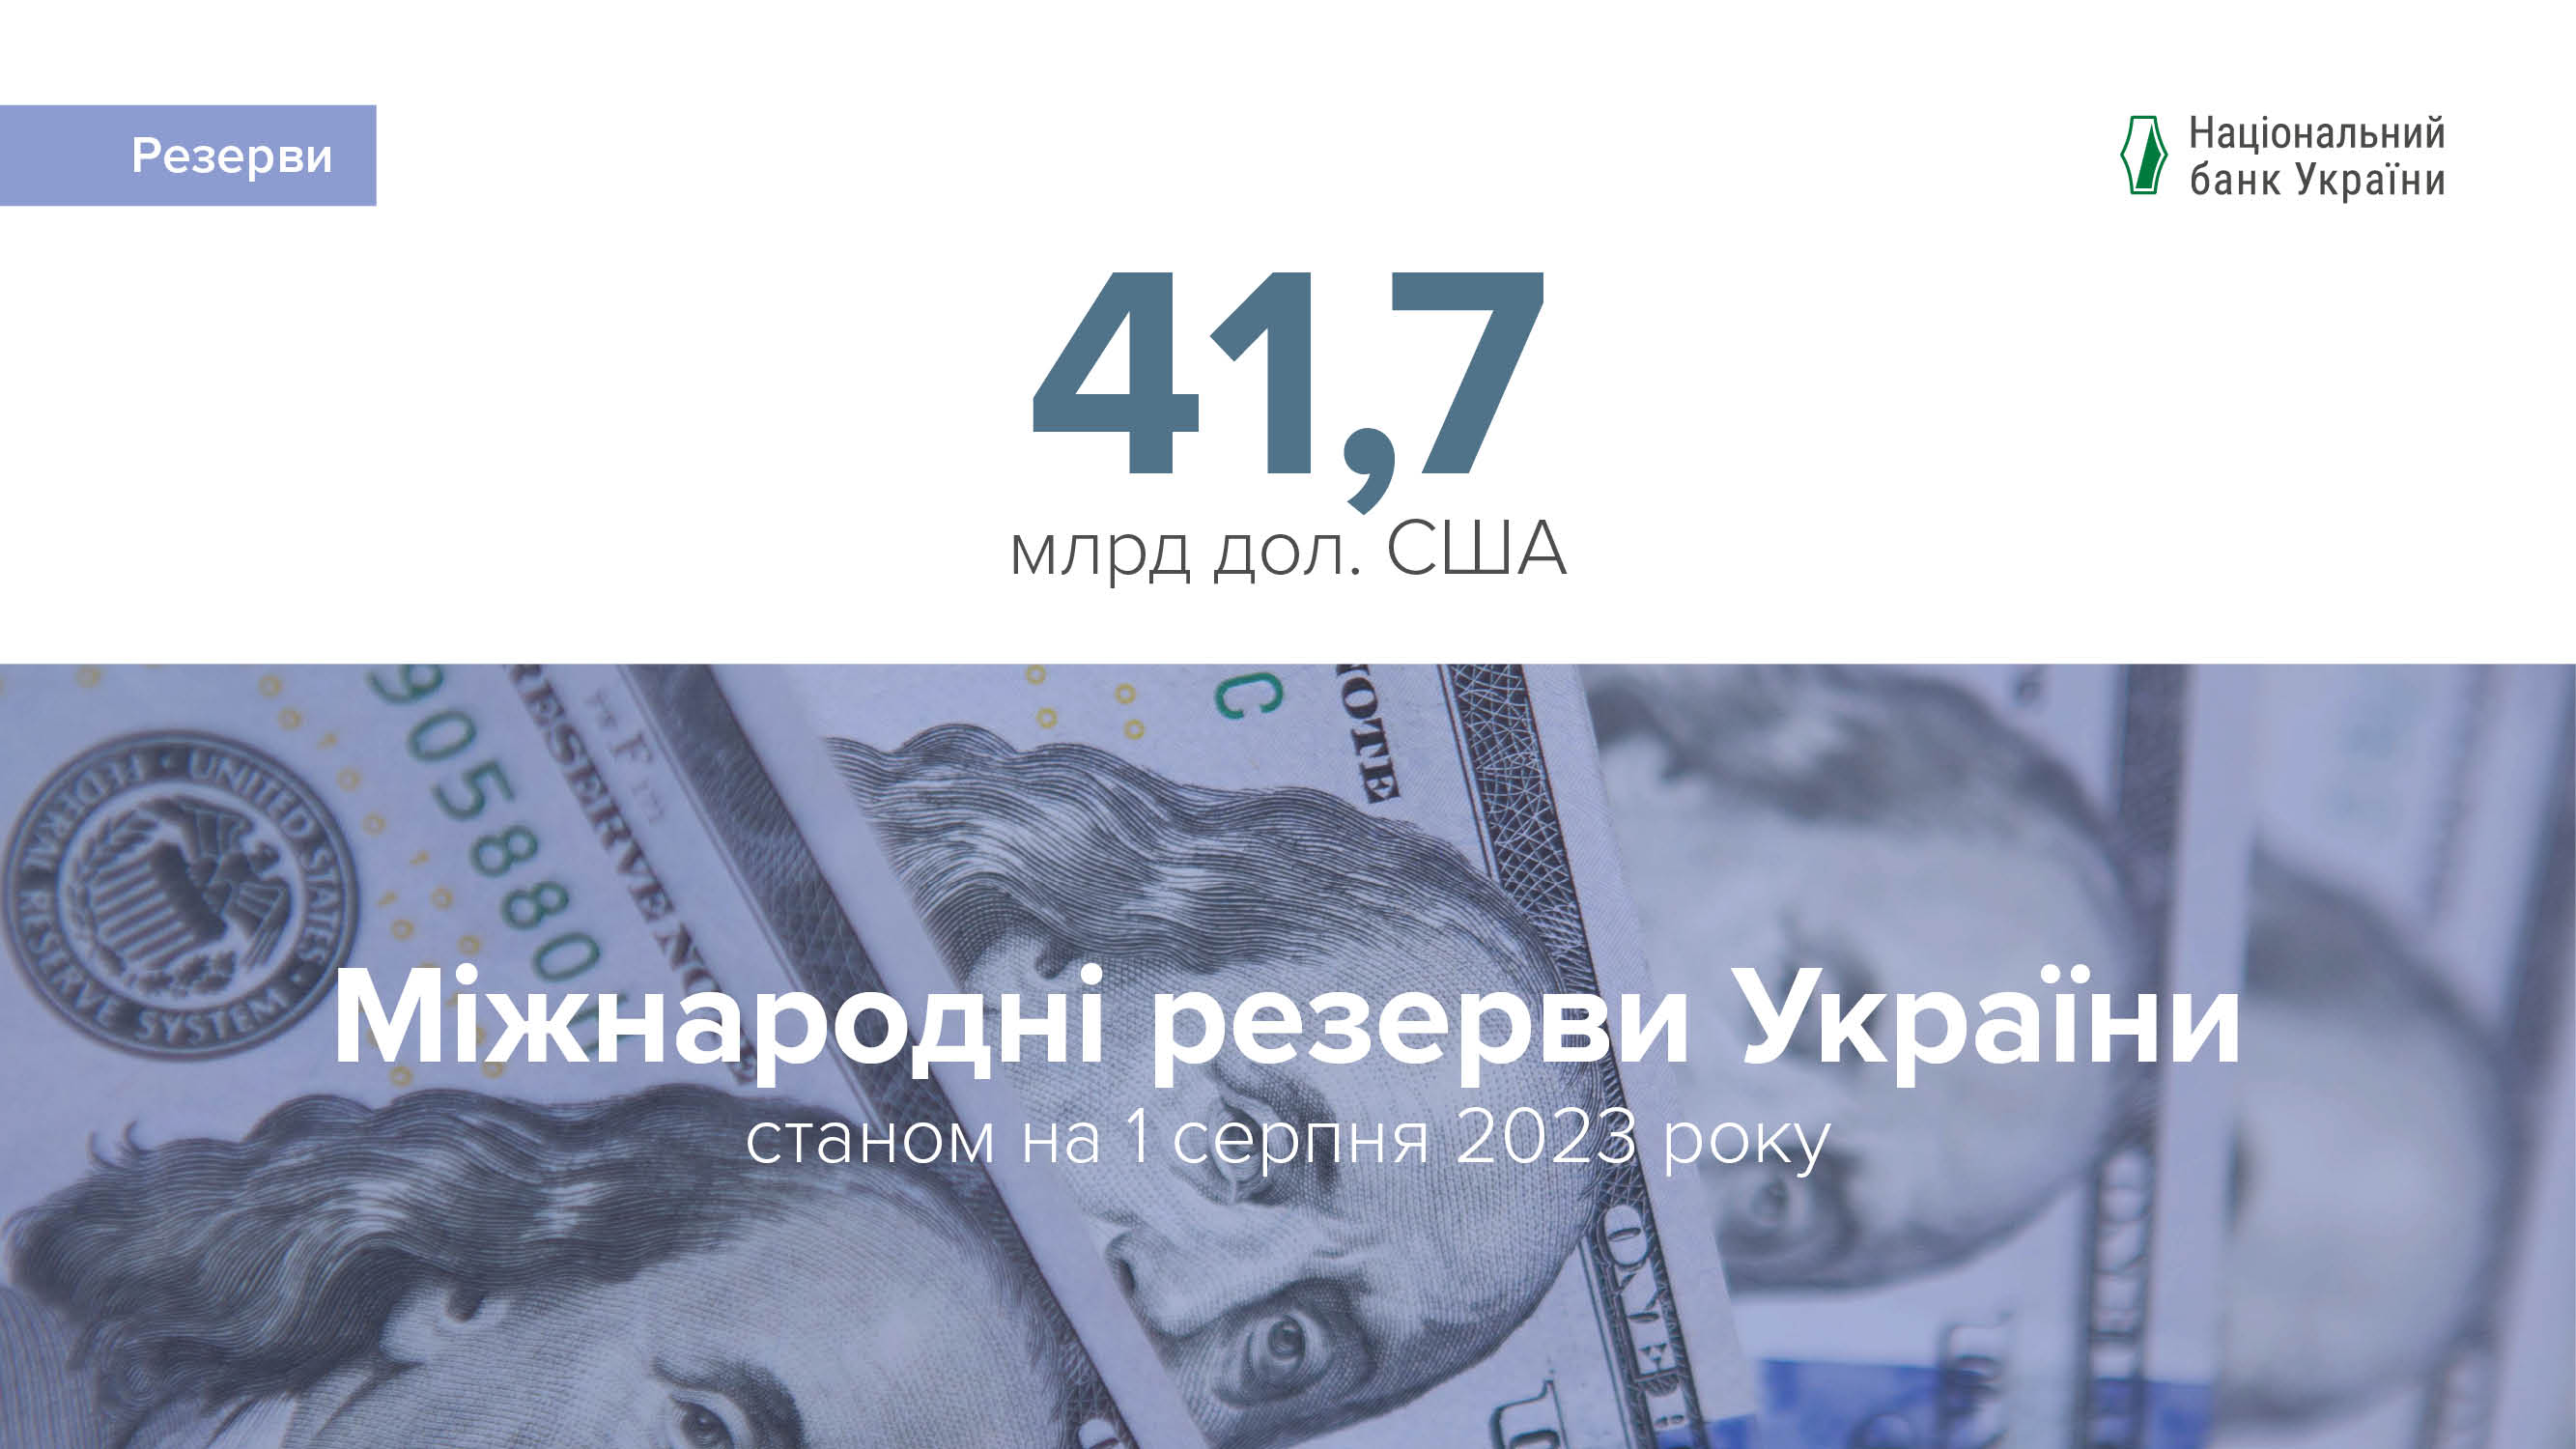 Міжнародні резерви перевищили 41,7 млрд дол. США за підсумками липня, оновивши історичний рекорд незалежної України